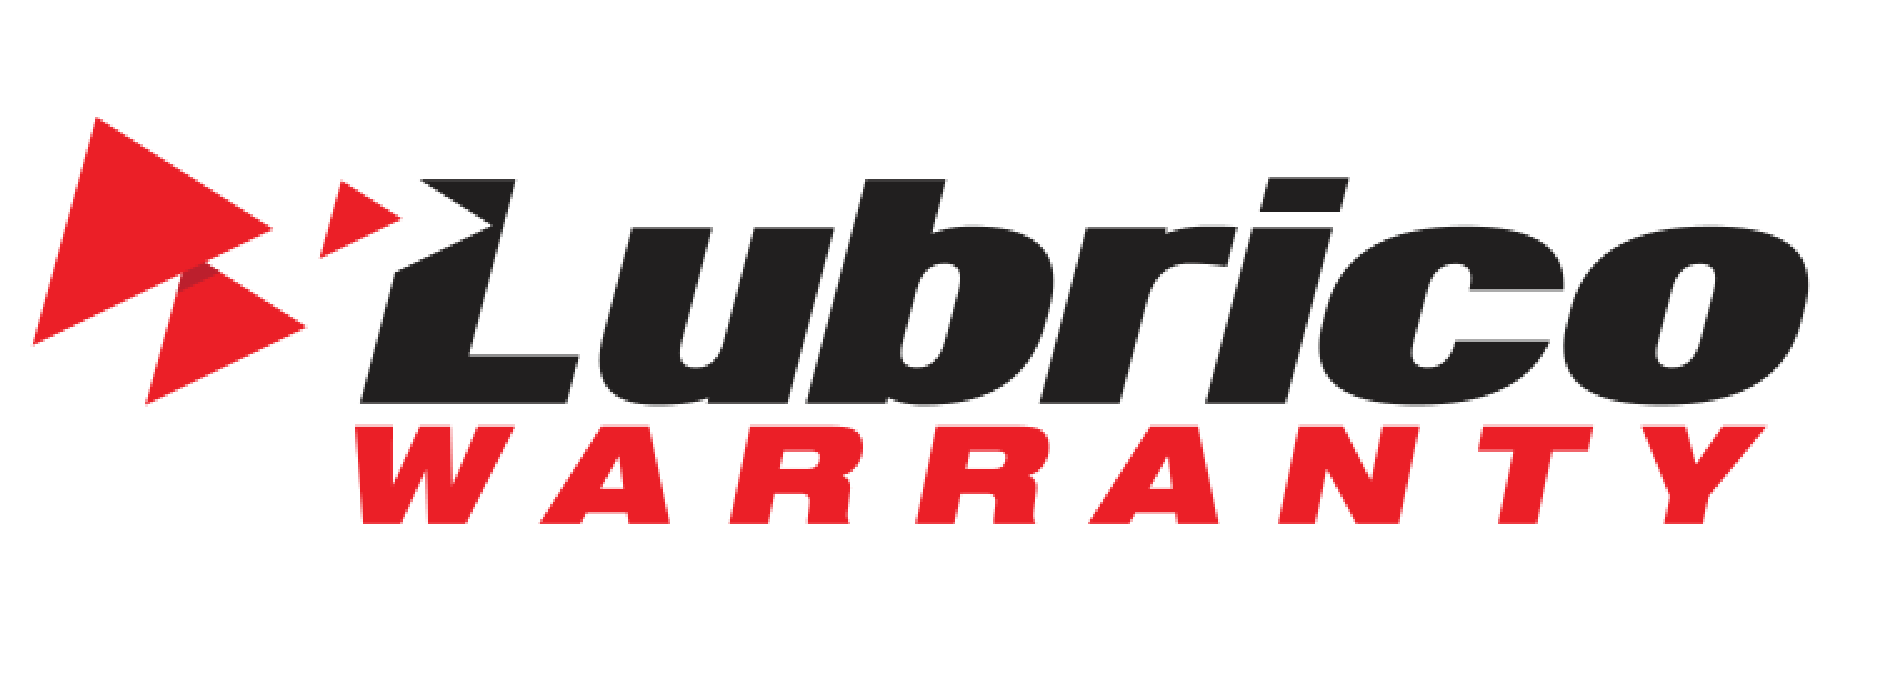 Lubrico Warranty